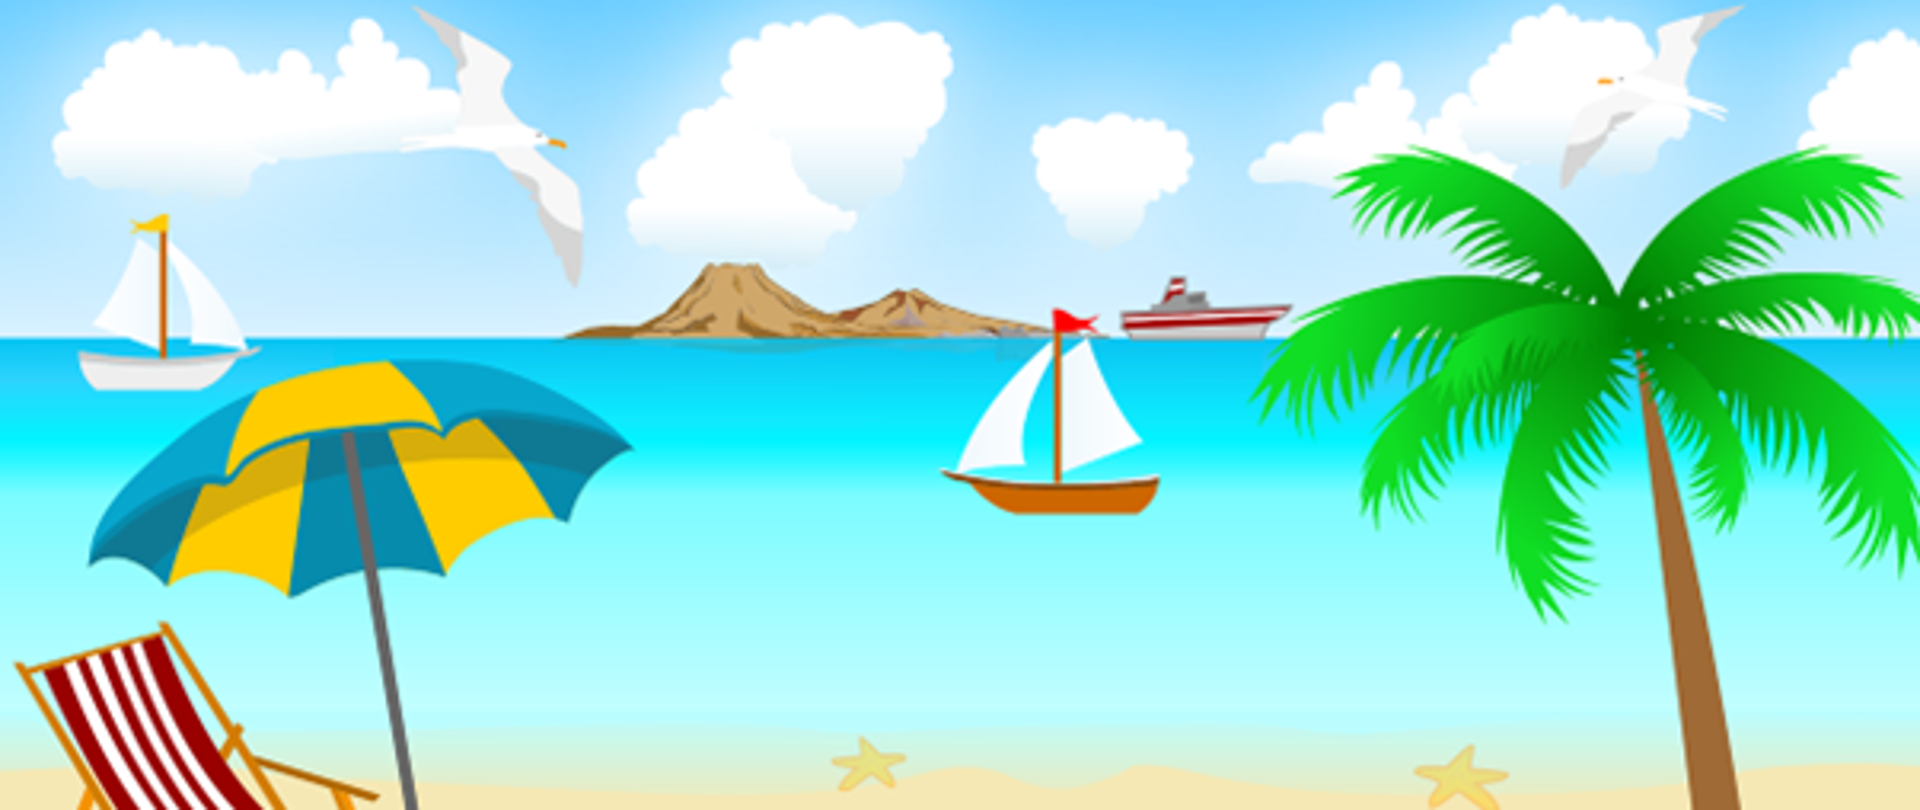 tekst alternatywny: obrazek przedstawiający po lewej stronie leżak i parasol plażowy a po prawej stronie palmę, na środku obrazka widać morze a na niej statki, w oddali widać góry